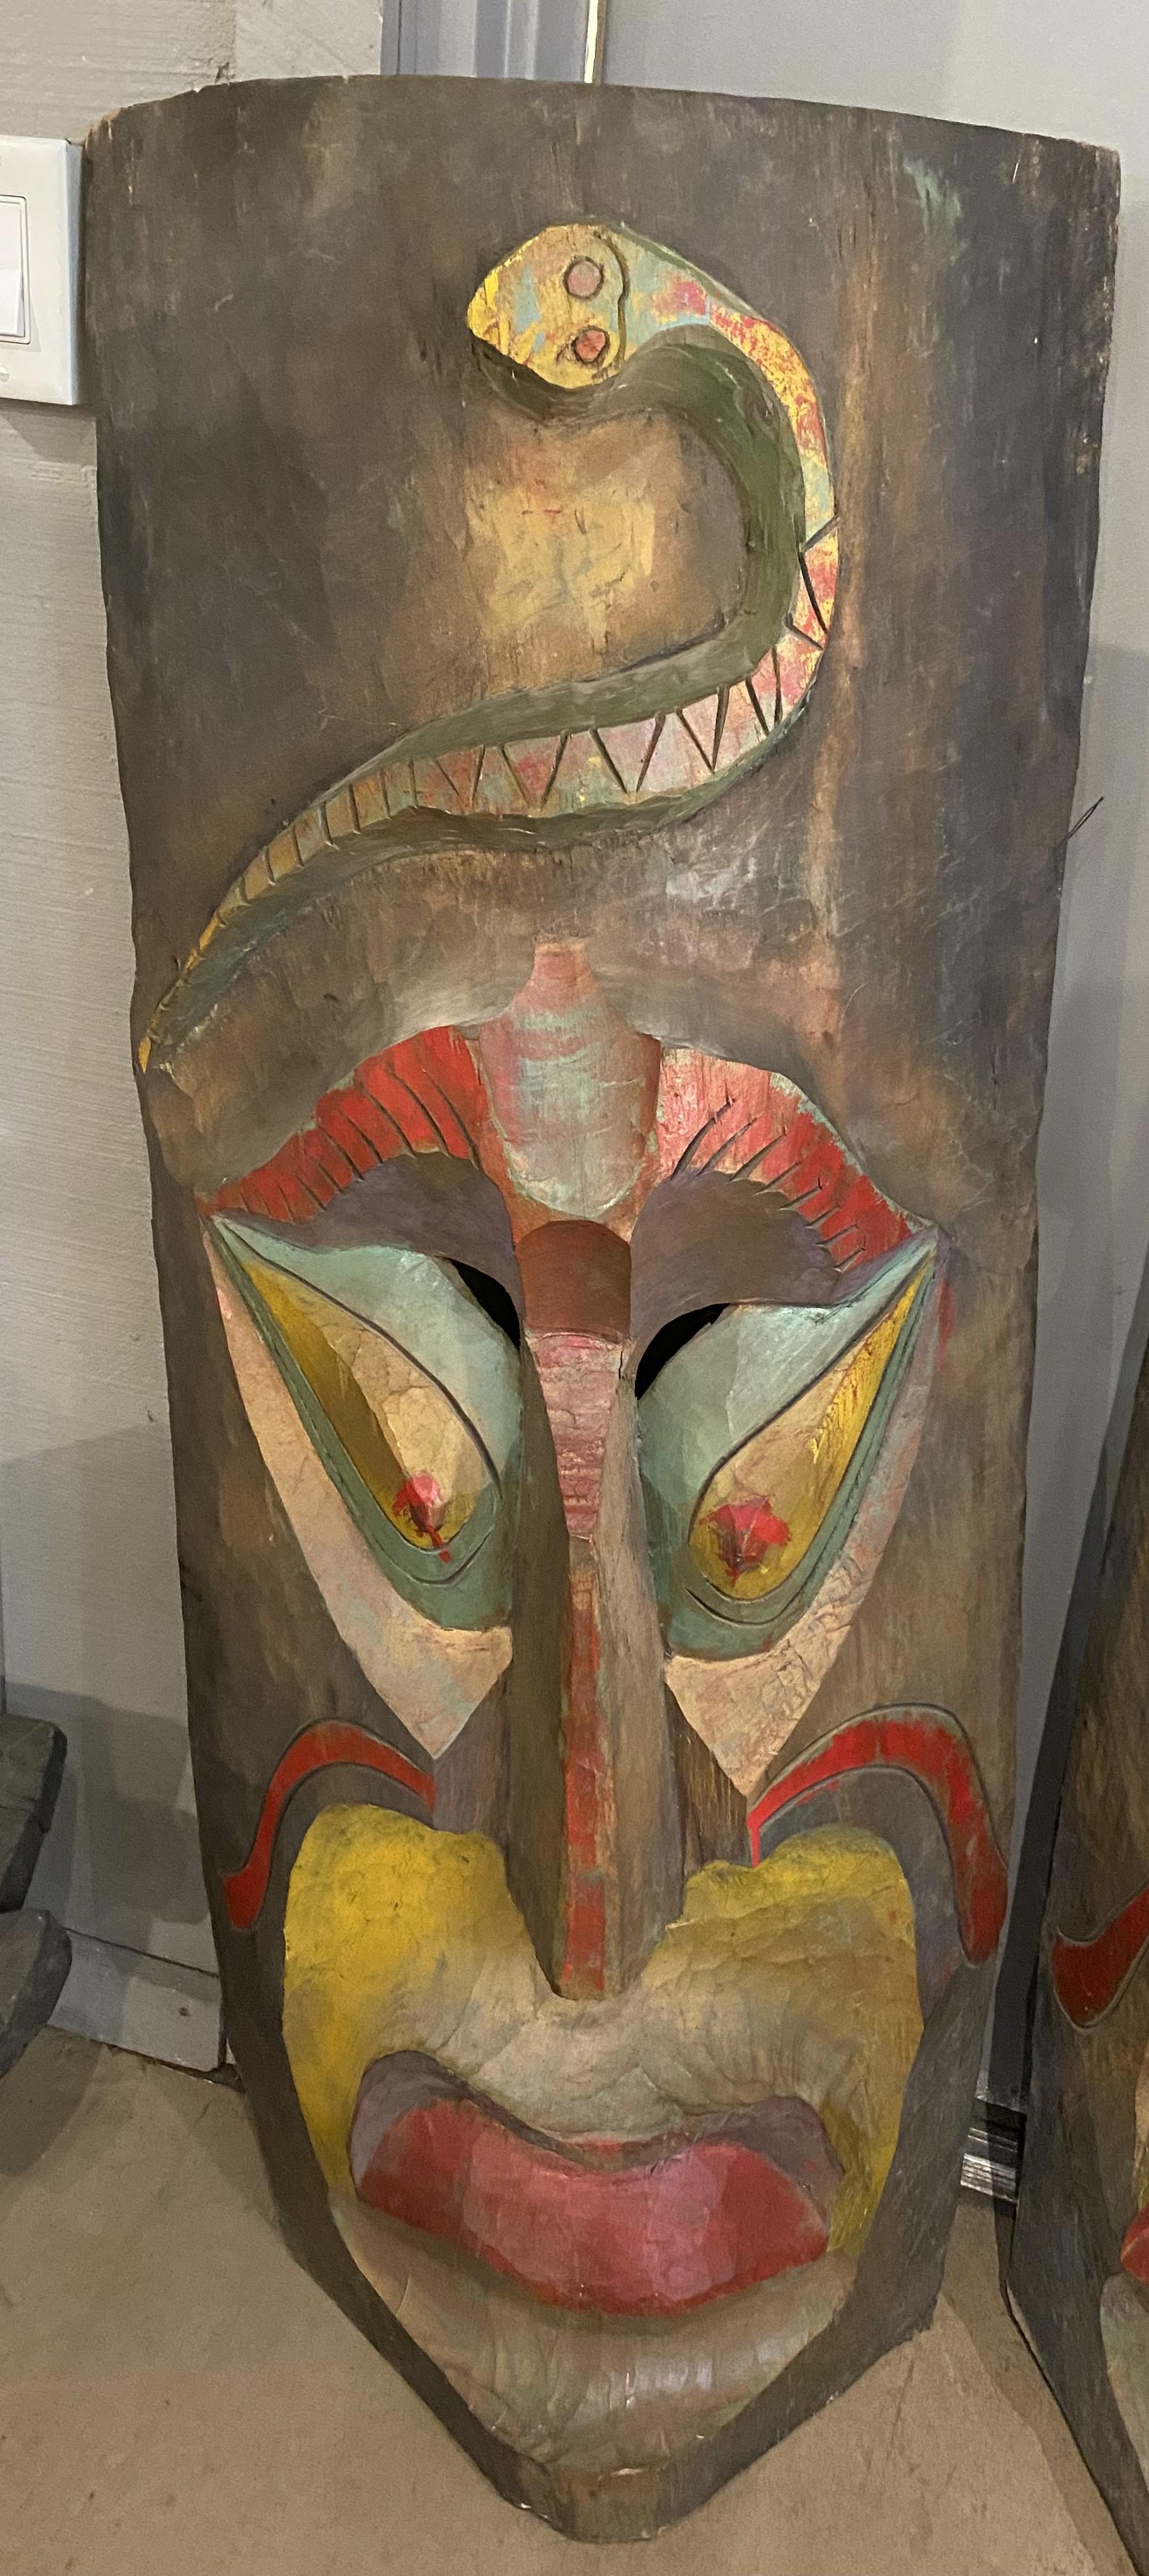 Magnifique paire de suspensions murales de style Tiki en bois polychrome surdimensionné sculpté à la main avec des serpents au-dessus des visages, datant du milieu à la fin du 20e siècle. Probablement du Mexique. Très bon état général, avec des